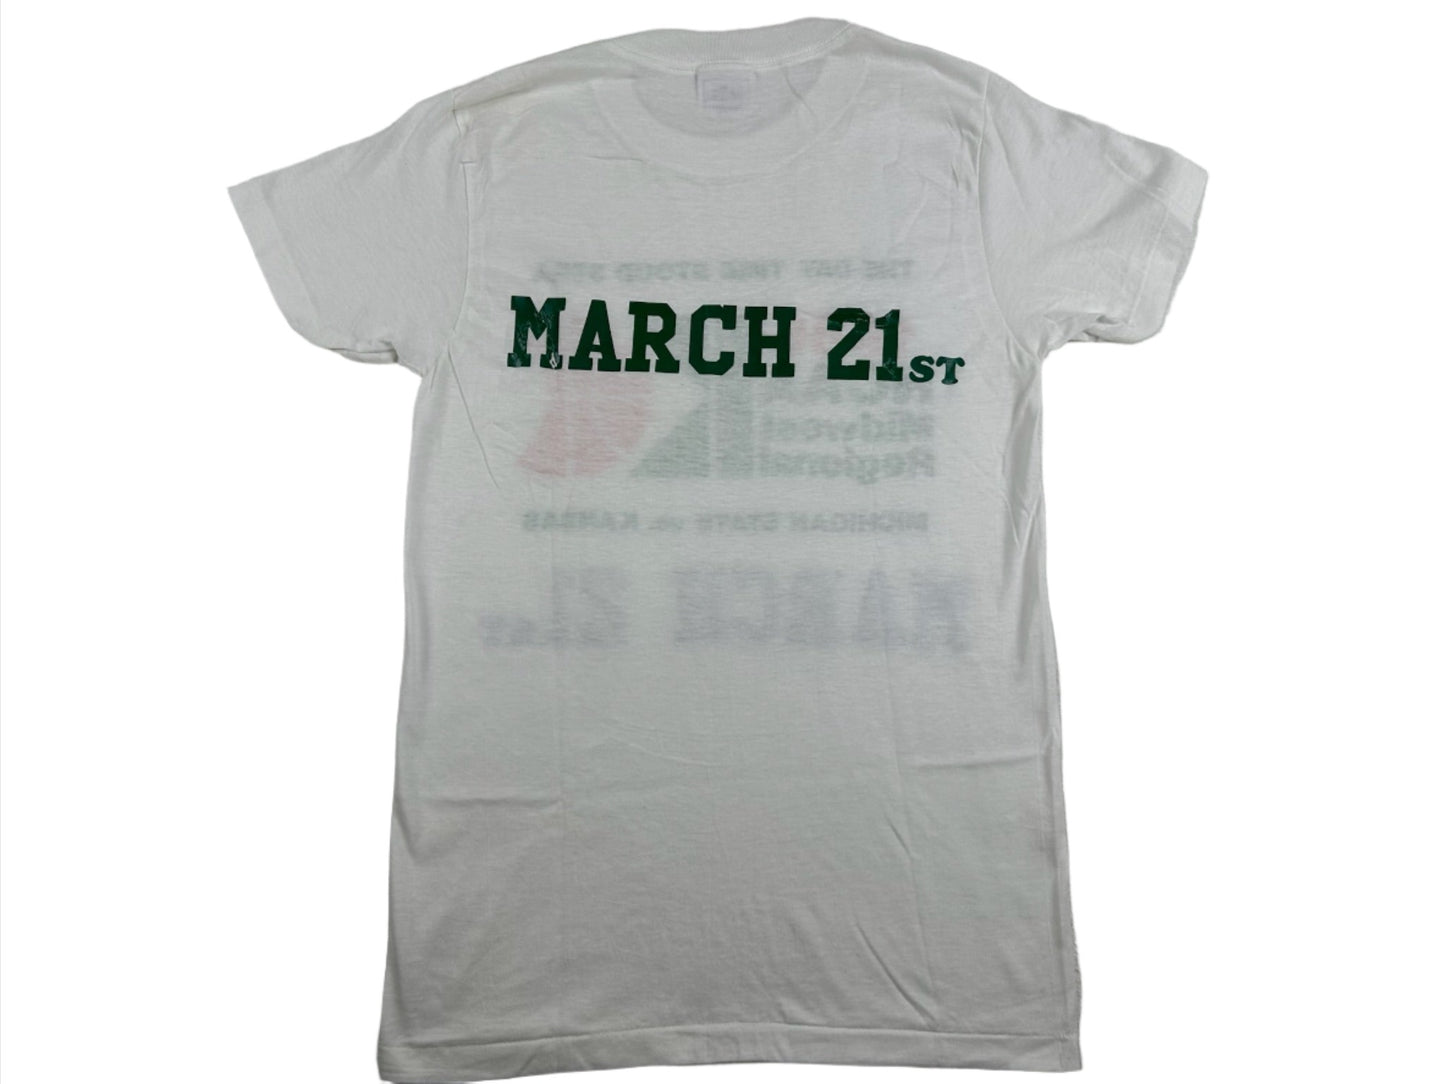 Michigan State '86 March Madness T-Shirt